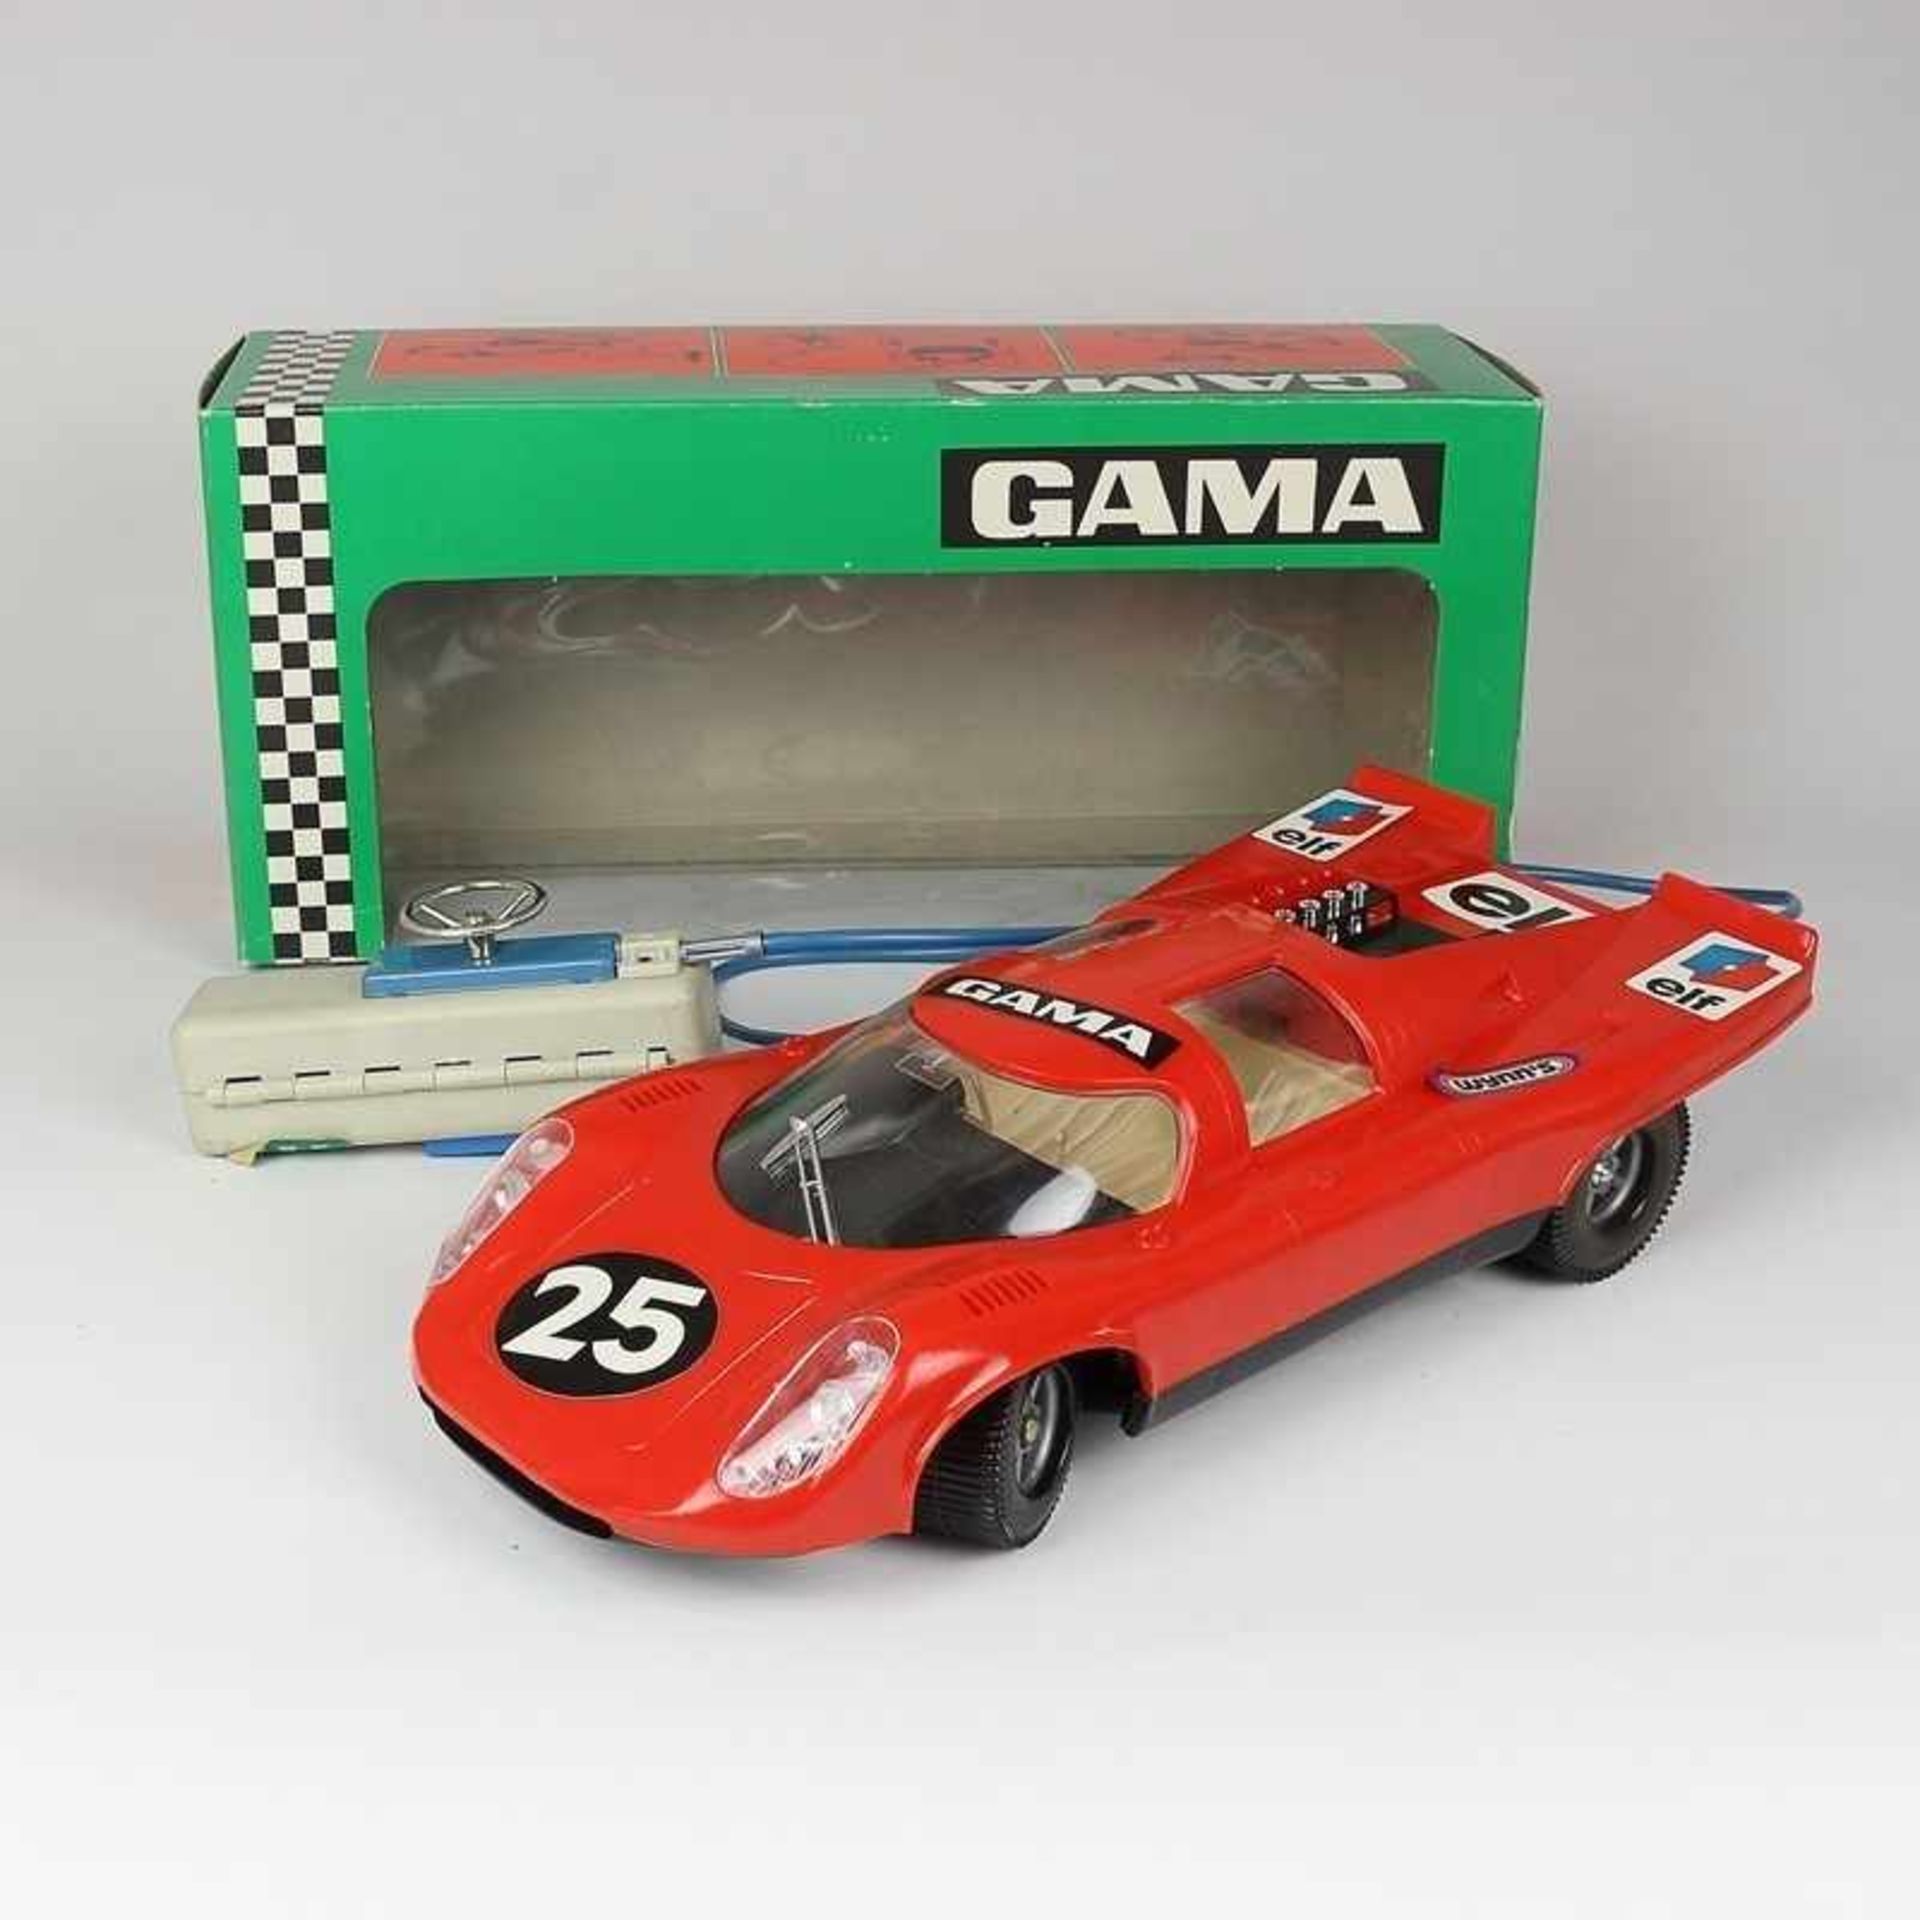 Gama - Modellauto Rennwagen, 1971, Porsche 917, Art.Nr. 4921, 1:12, rot, Elektromotor mit